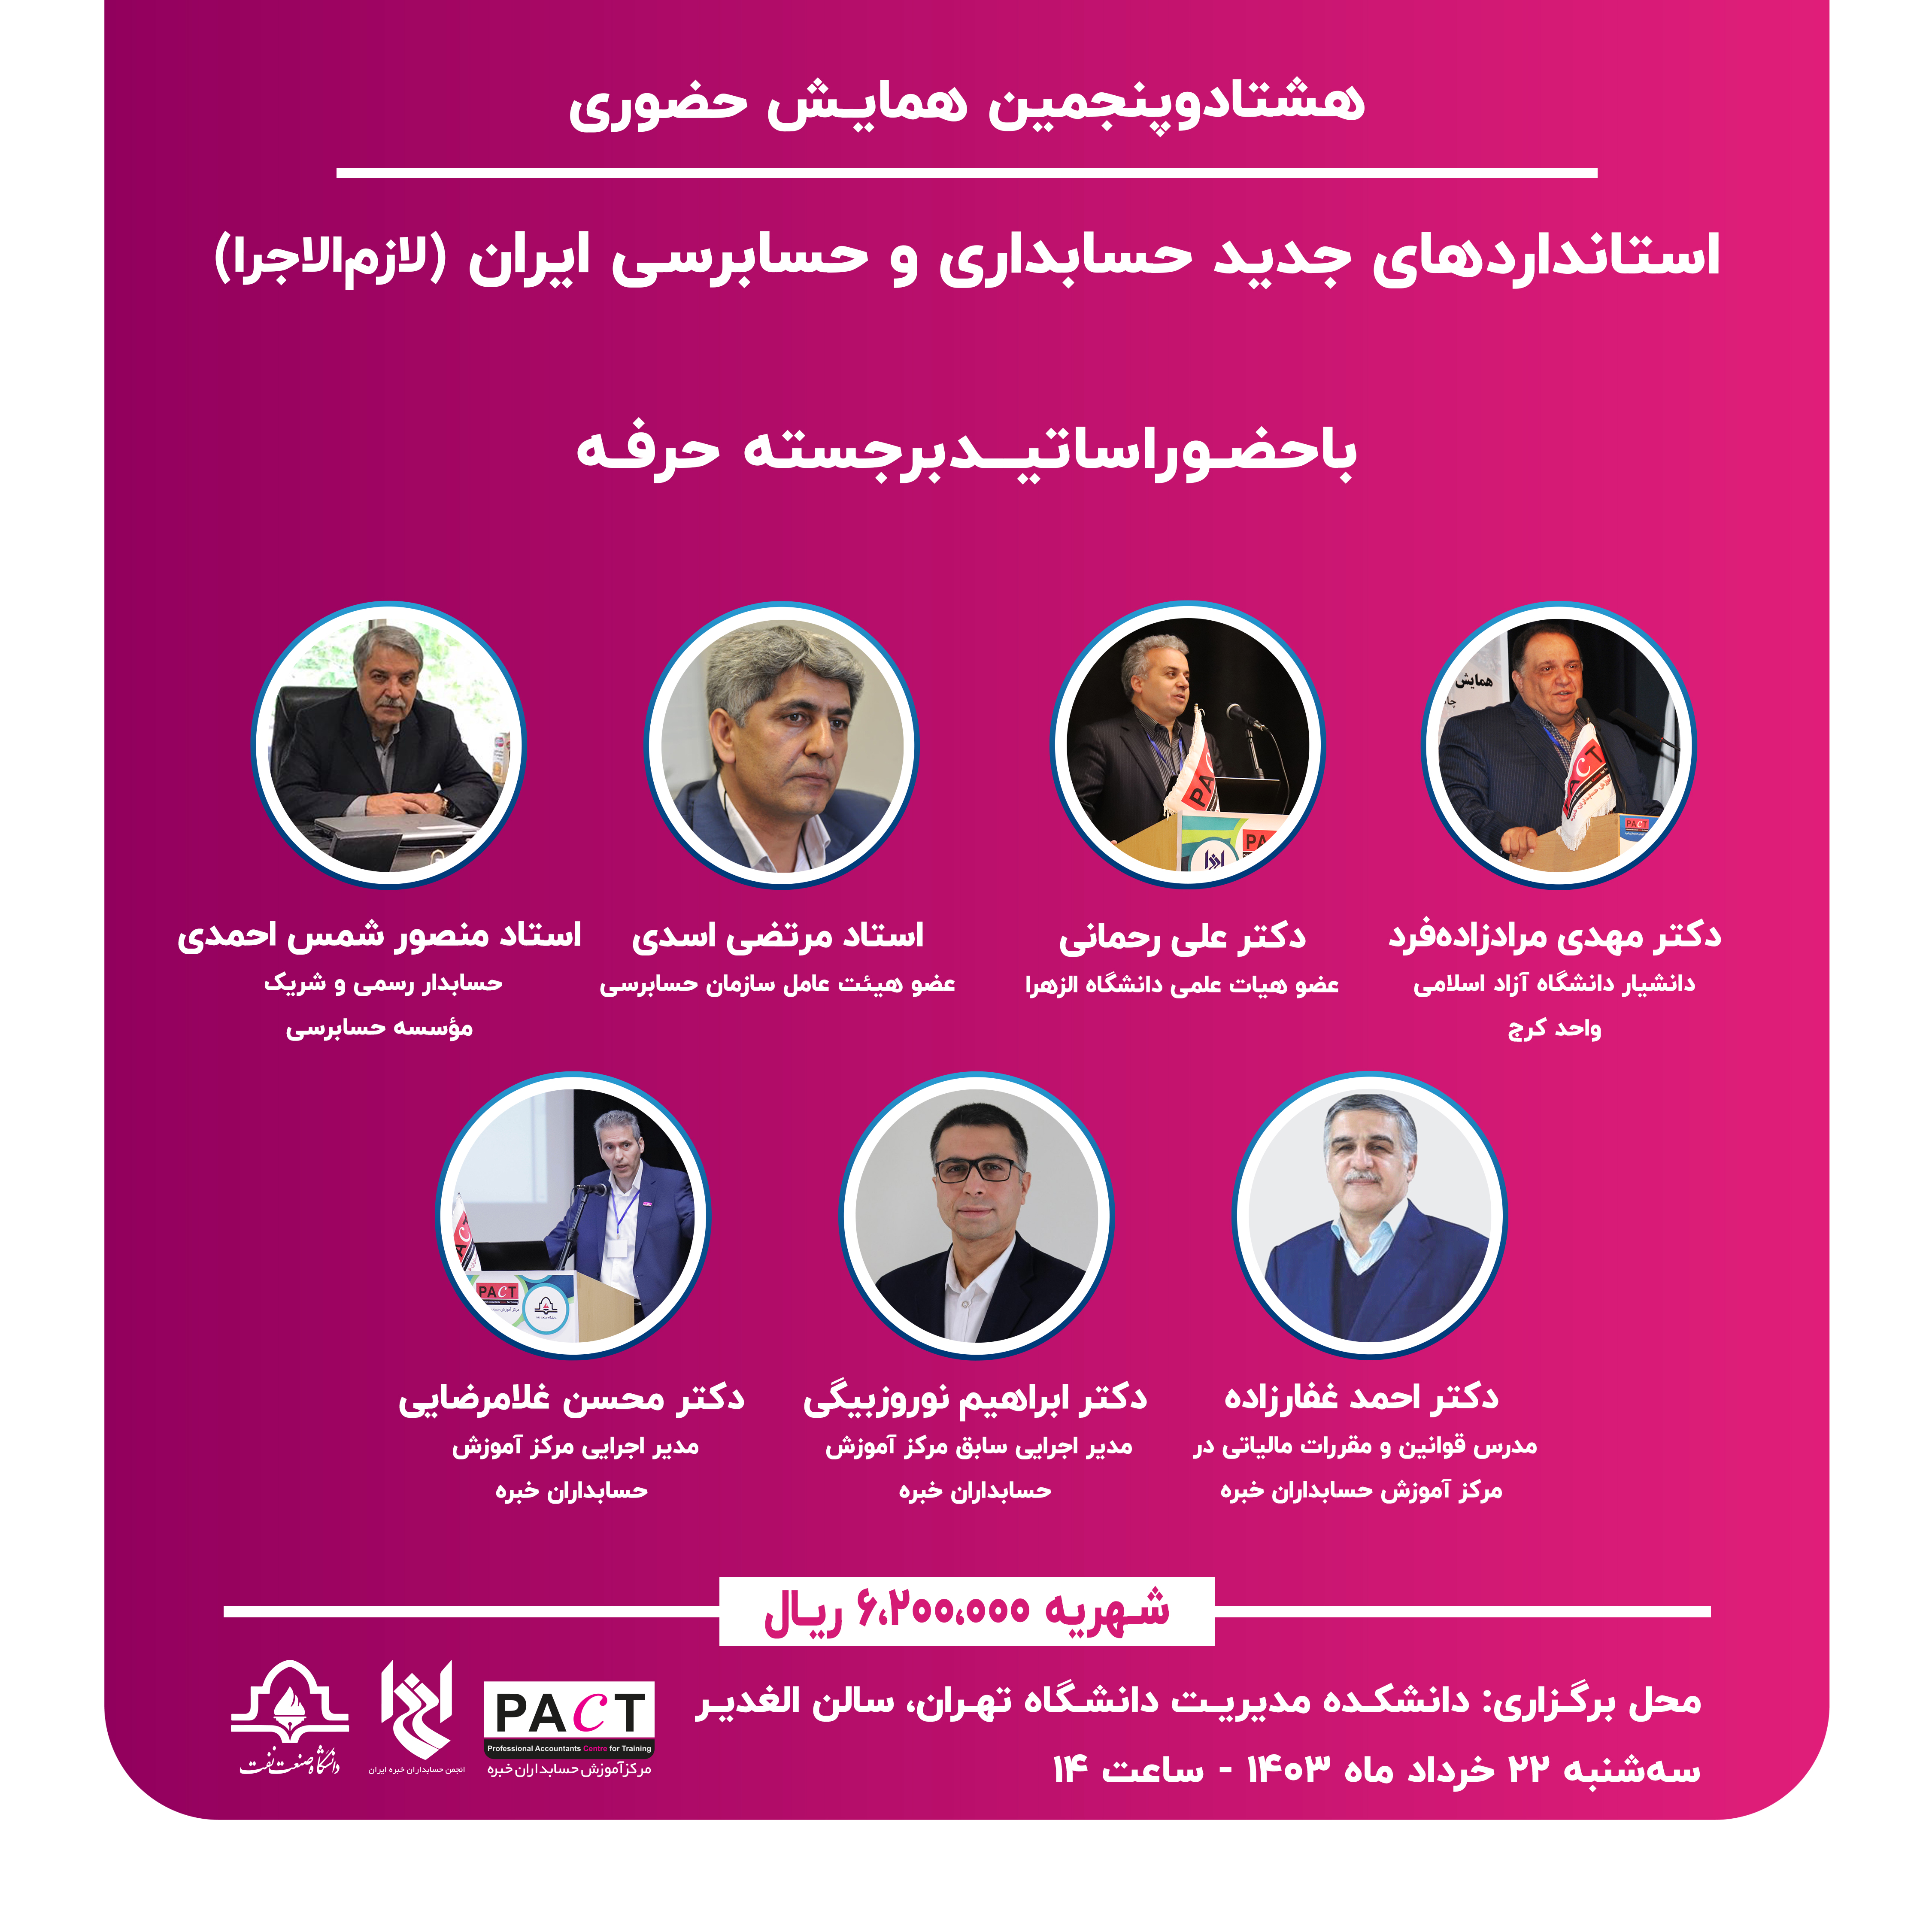 هشتادوپنجمین همایش حضوری استانداردهای جدید حسابداری و حسابرسی ایران (لازم‌الاجرا)